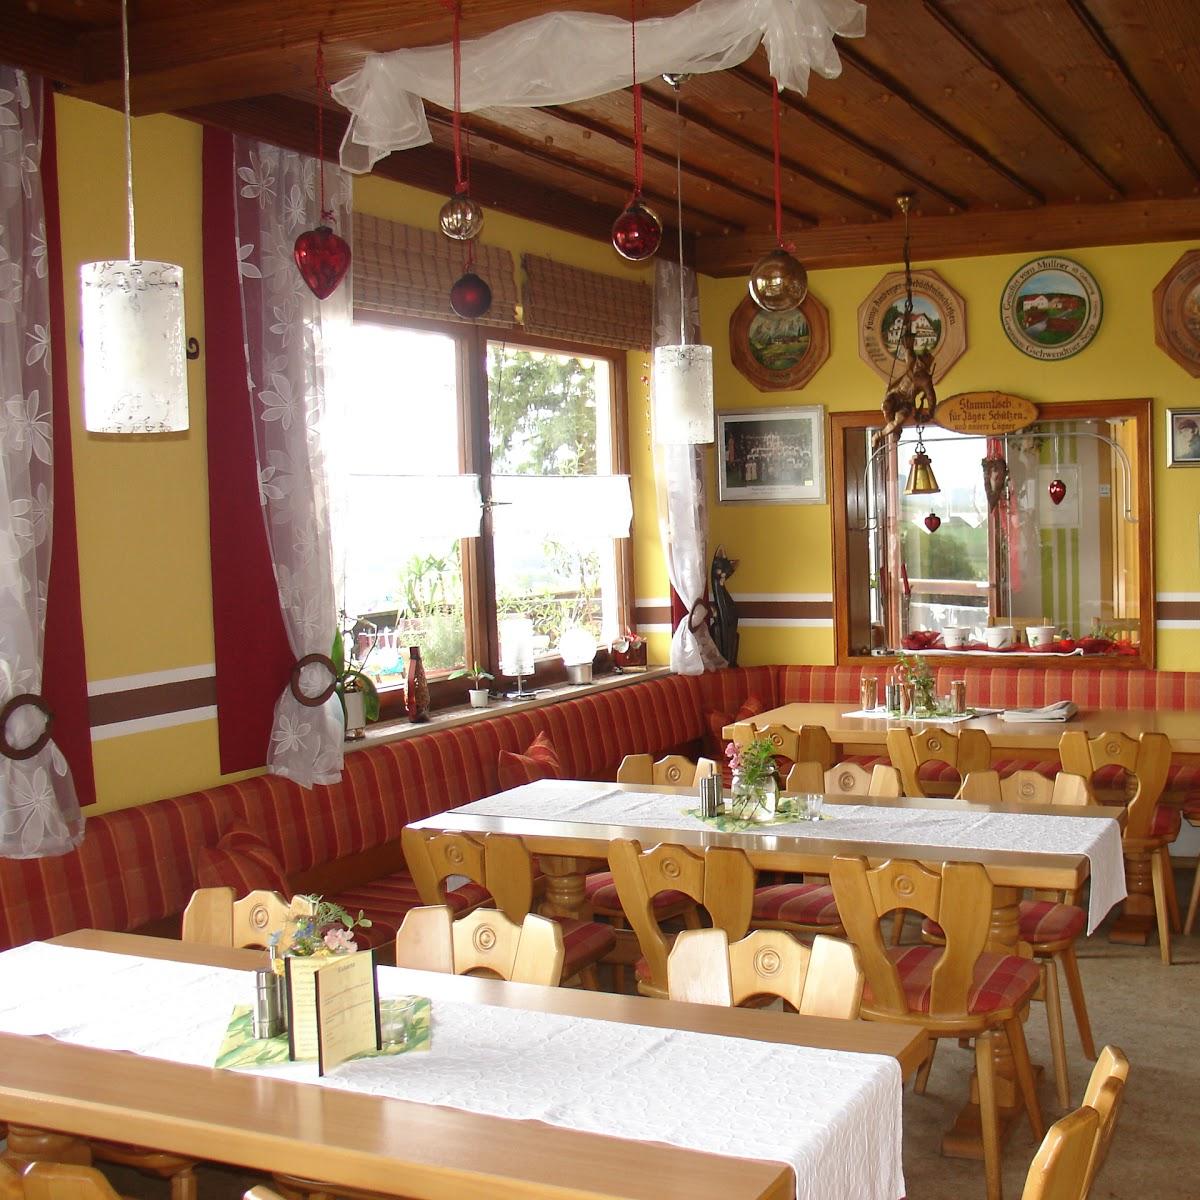 Restaurant "Landhotel Waldesruh" in Furth im Wald